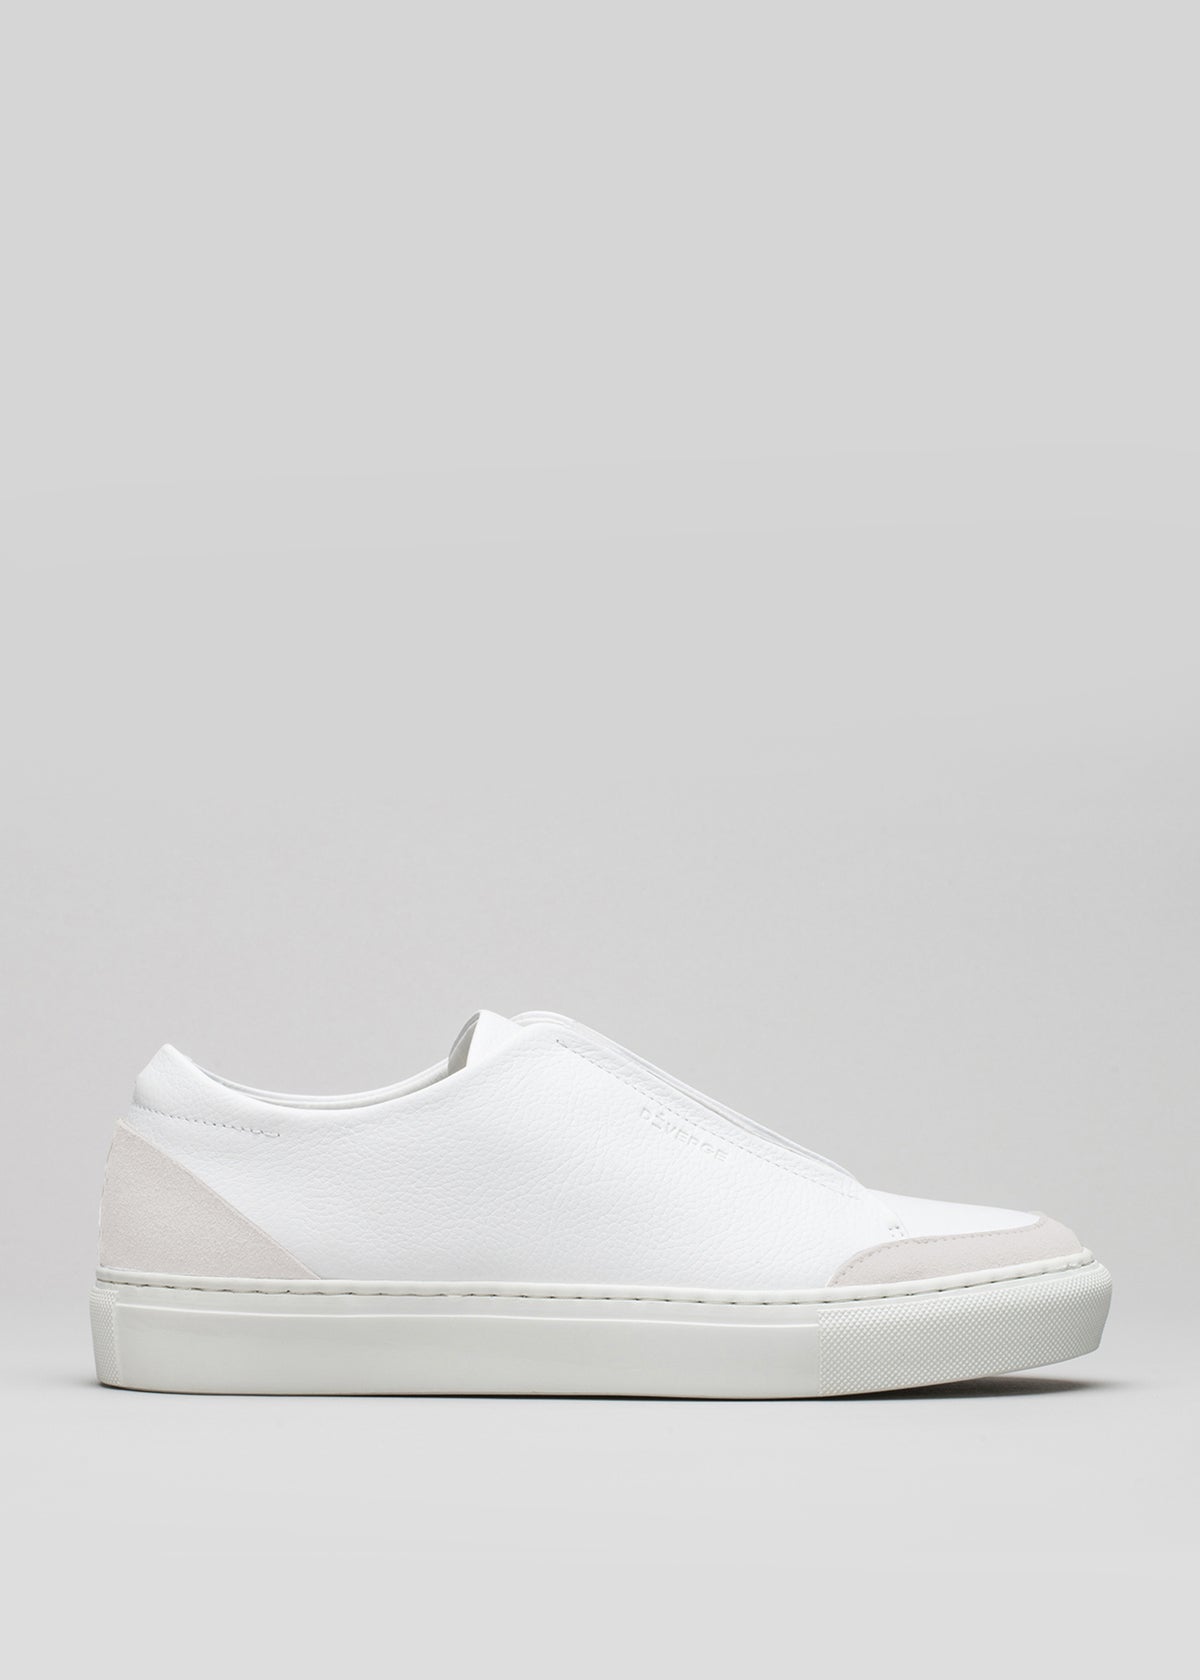 Iniziate con una slip-on in tela bianca sneakers con suola in gomma, visualizzata su uno sfondo grigio.